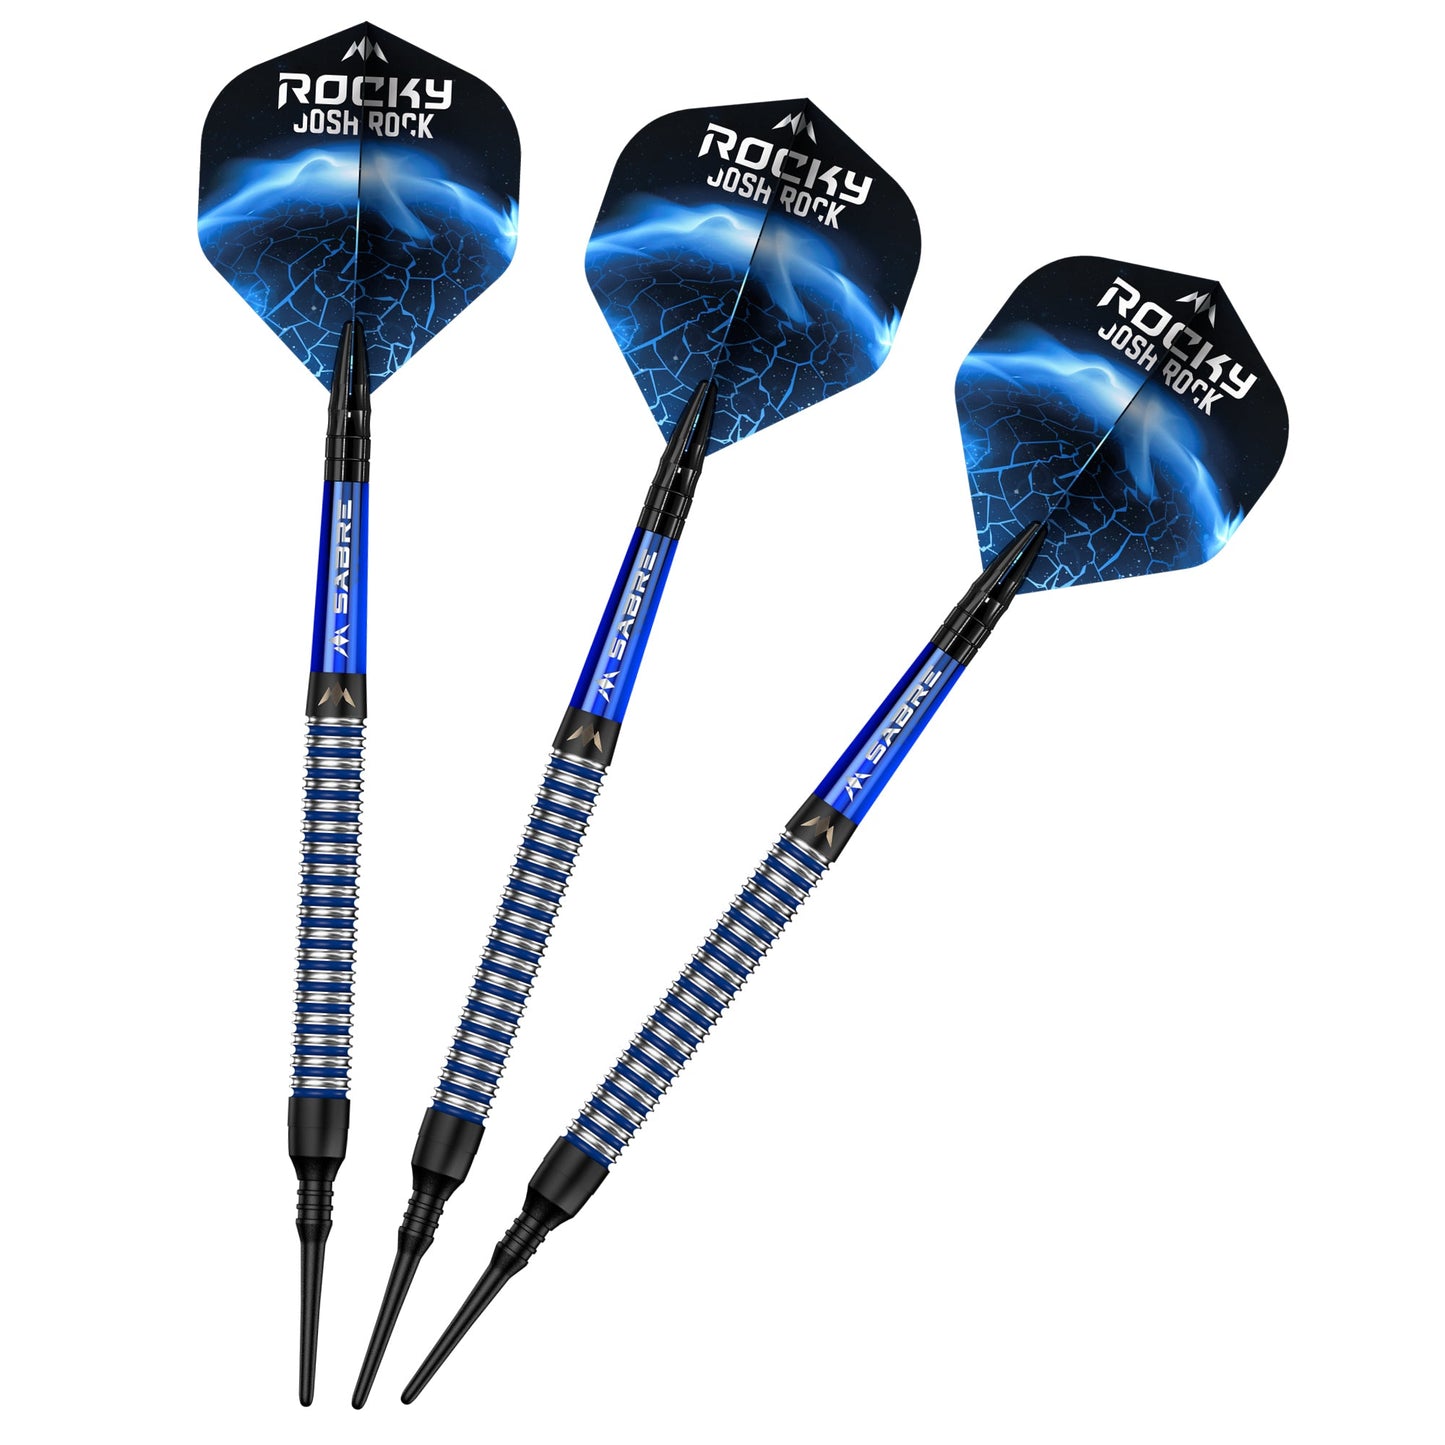 Mission Josh Rock Darts v1 - Soft Tip - The Rock - Black & Blue - 18g